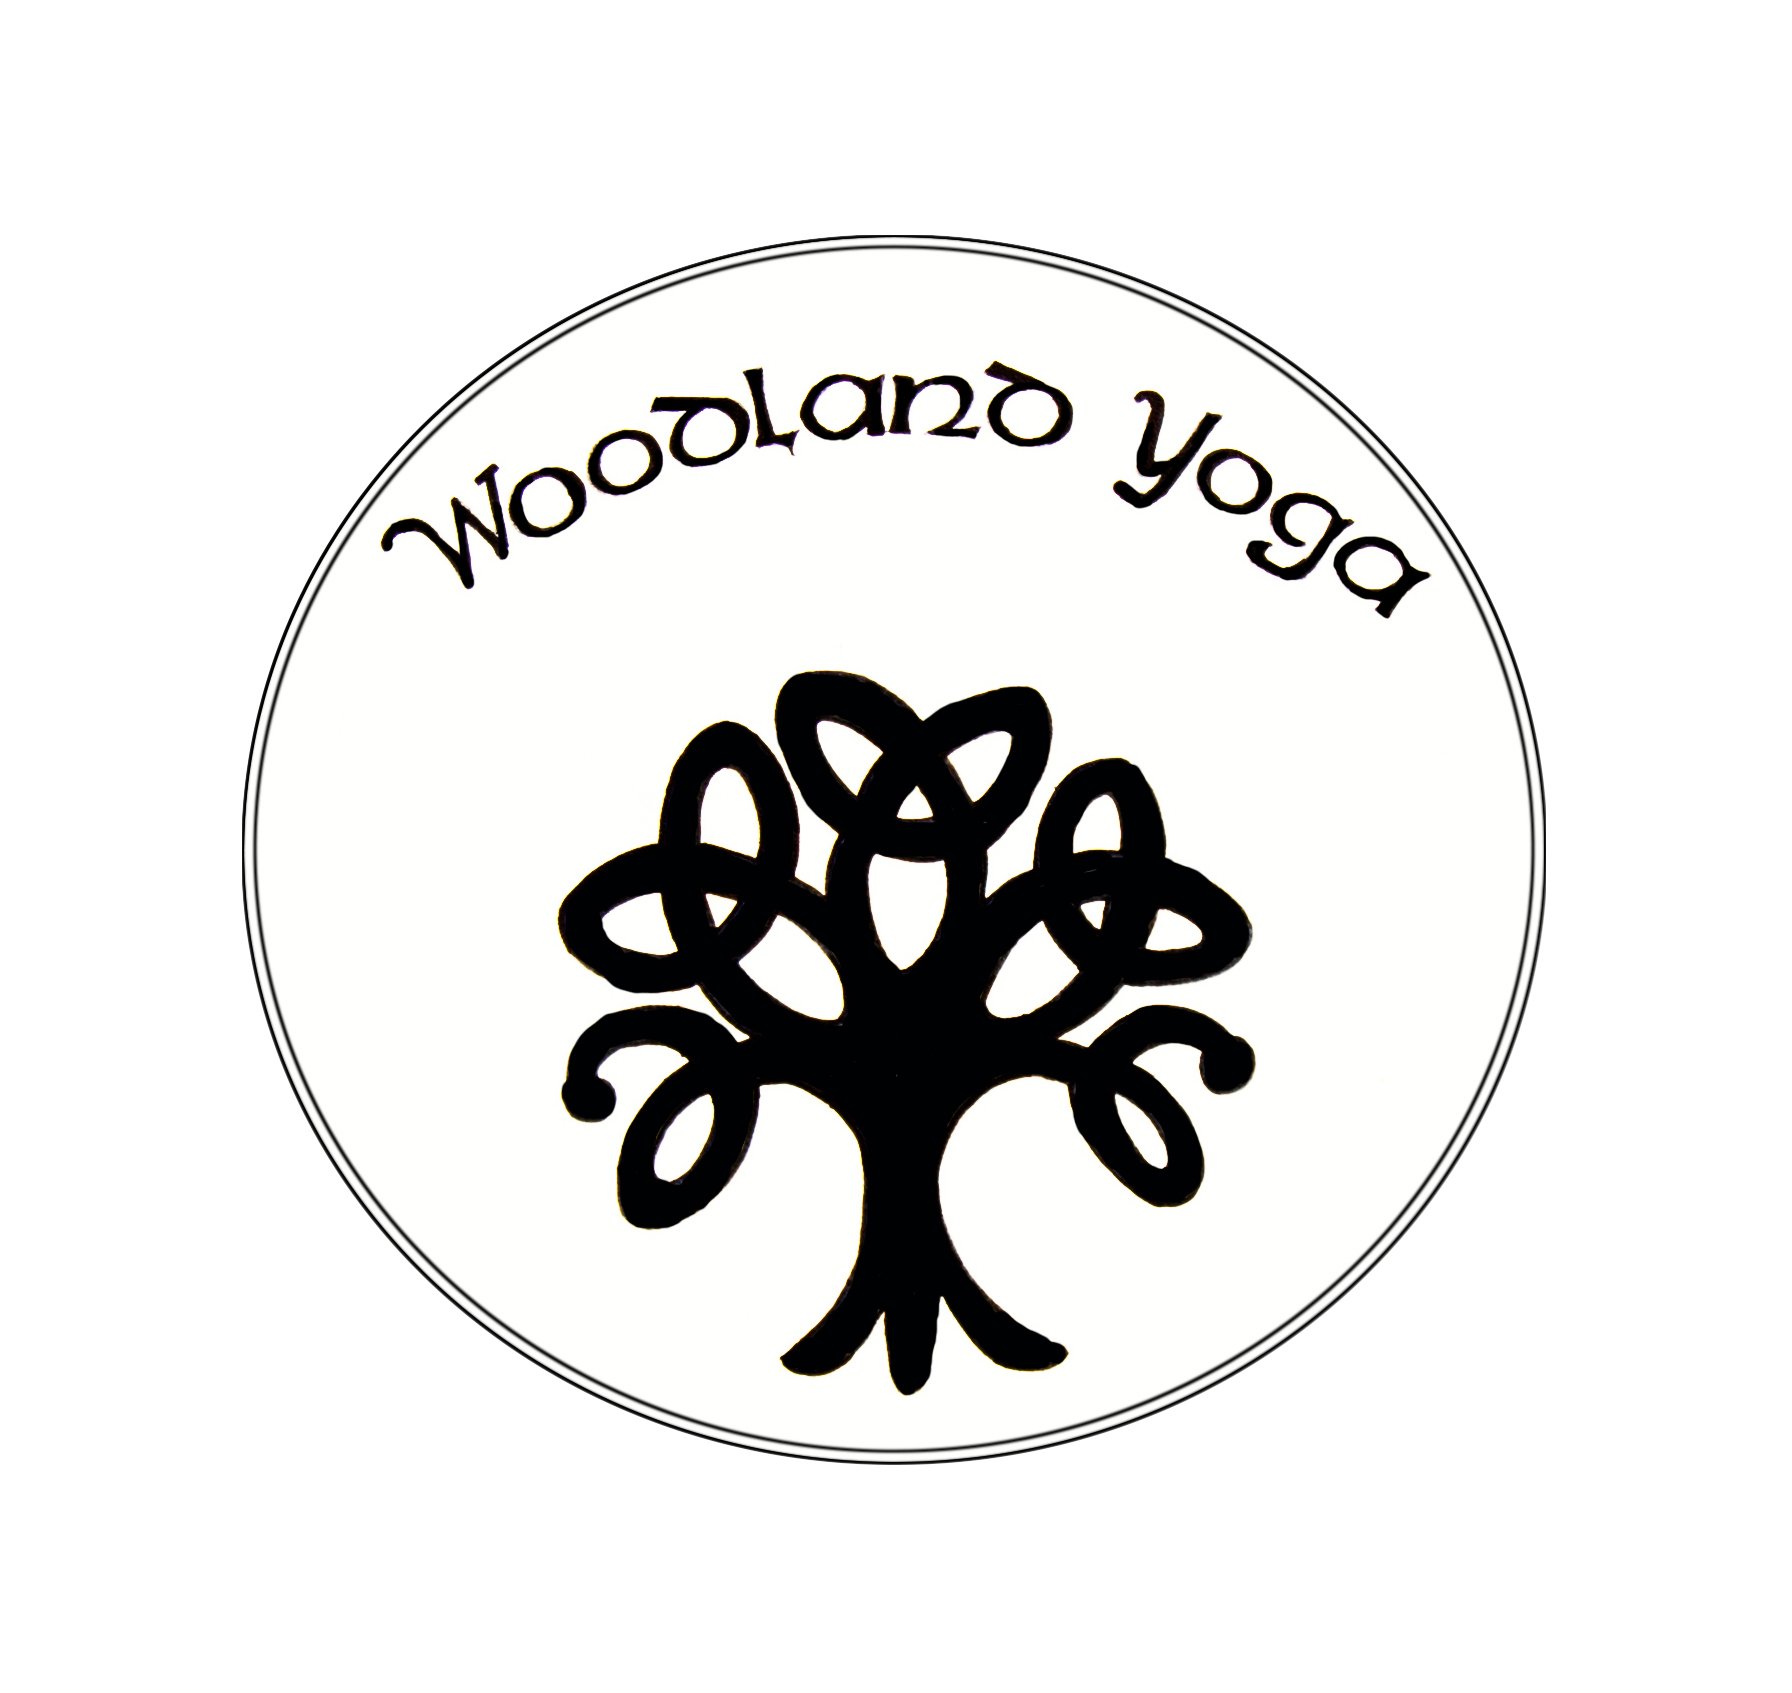 woodland-yogs-st-albans-harpenden-hertfordshire-logo-design.jpg